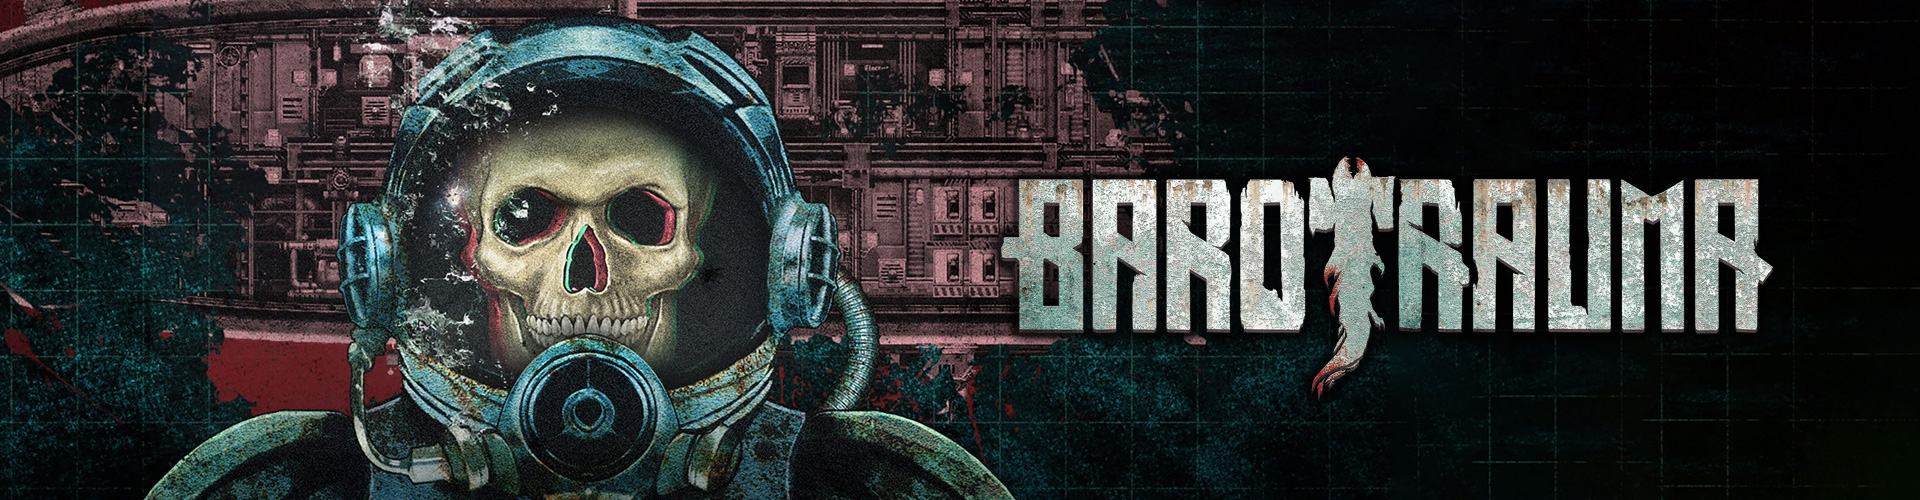 Barotrauma: Ã© um jogo multiplayer de terror submarino